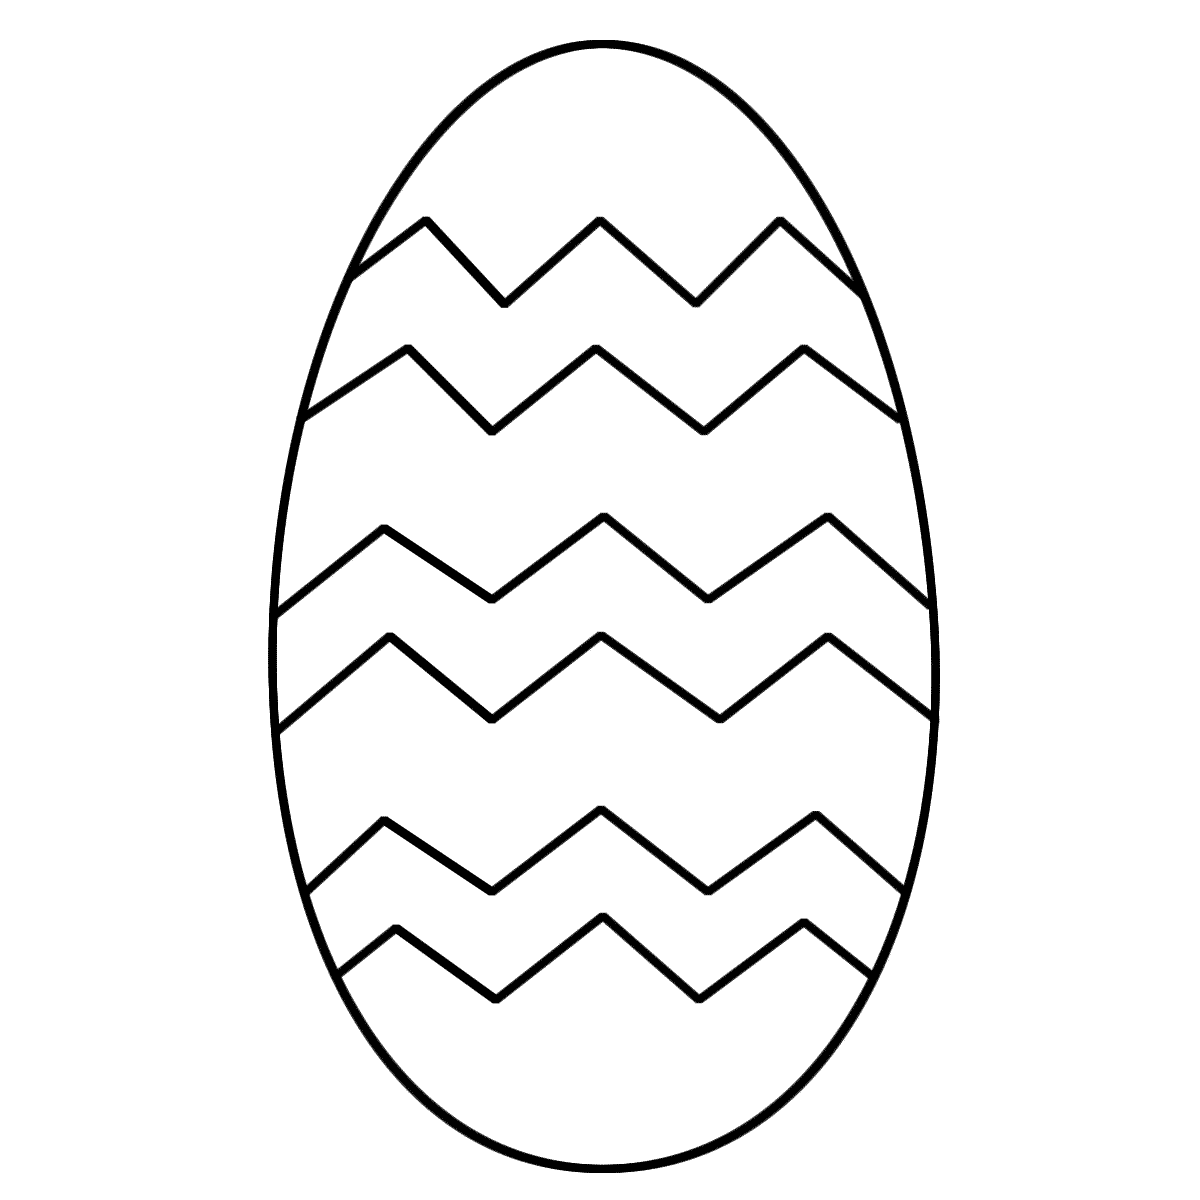 Blank Easter Egg Free Printable - ClipArt Best